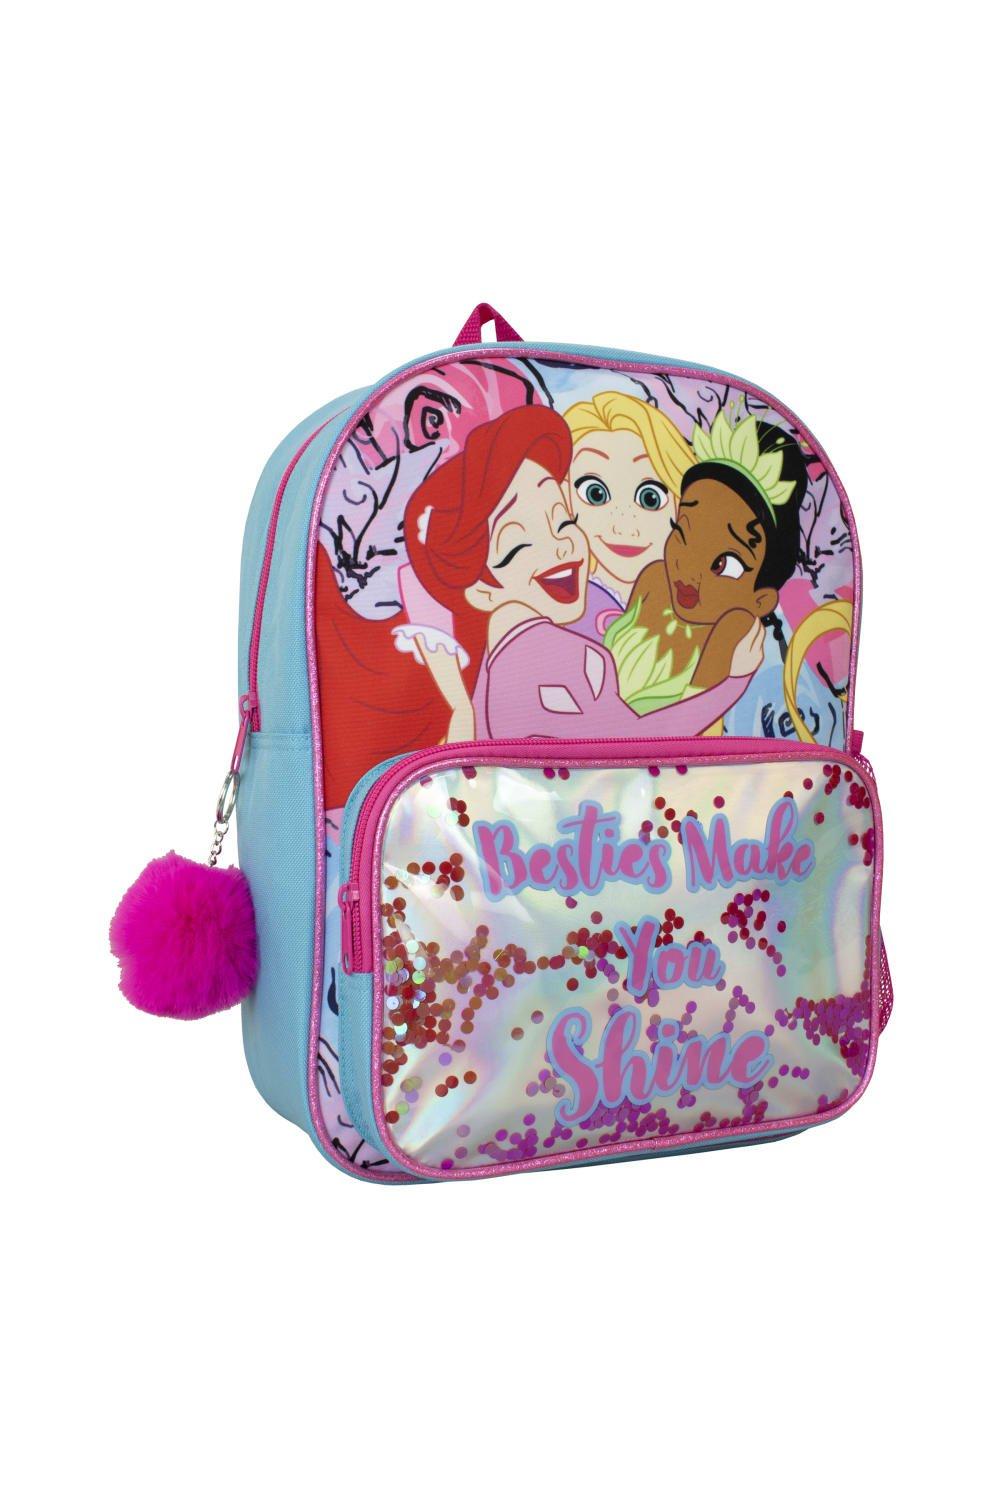 Рюкзак принцессы с помпоном с изображением Ариэль Рапунцель и Тианы Disney, синий lego музыкальная шкатулка рапунцель disney princess